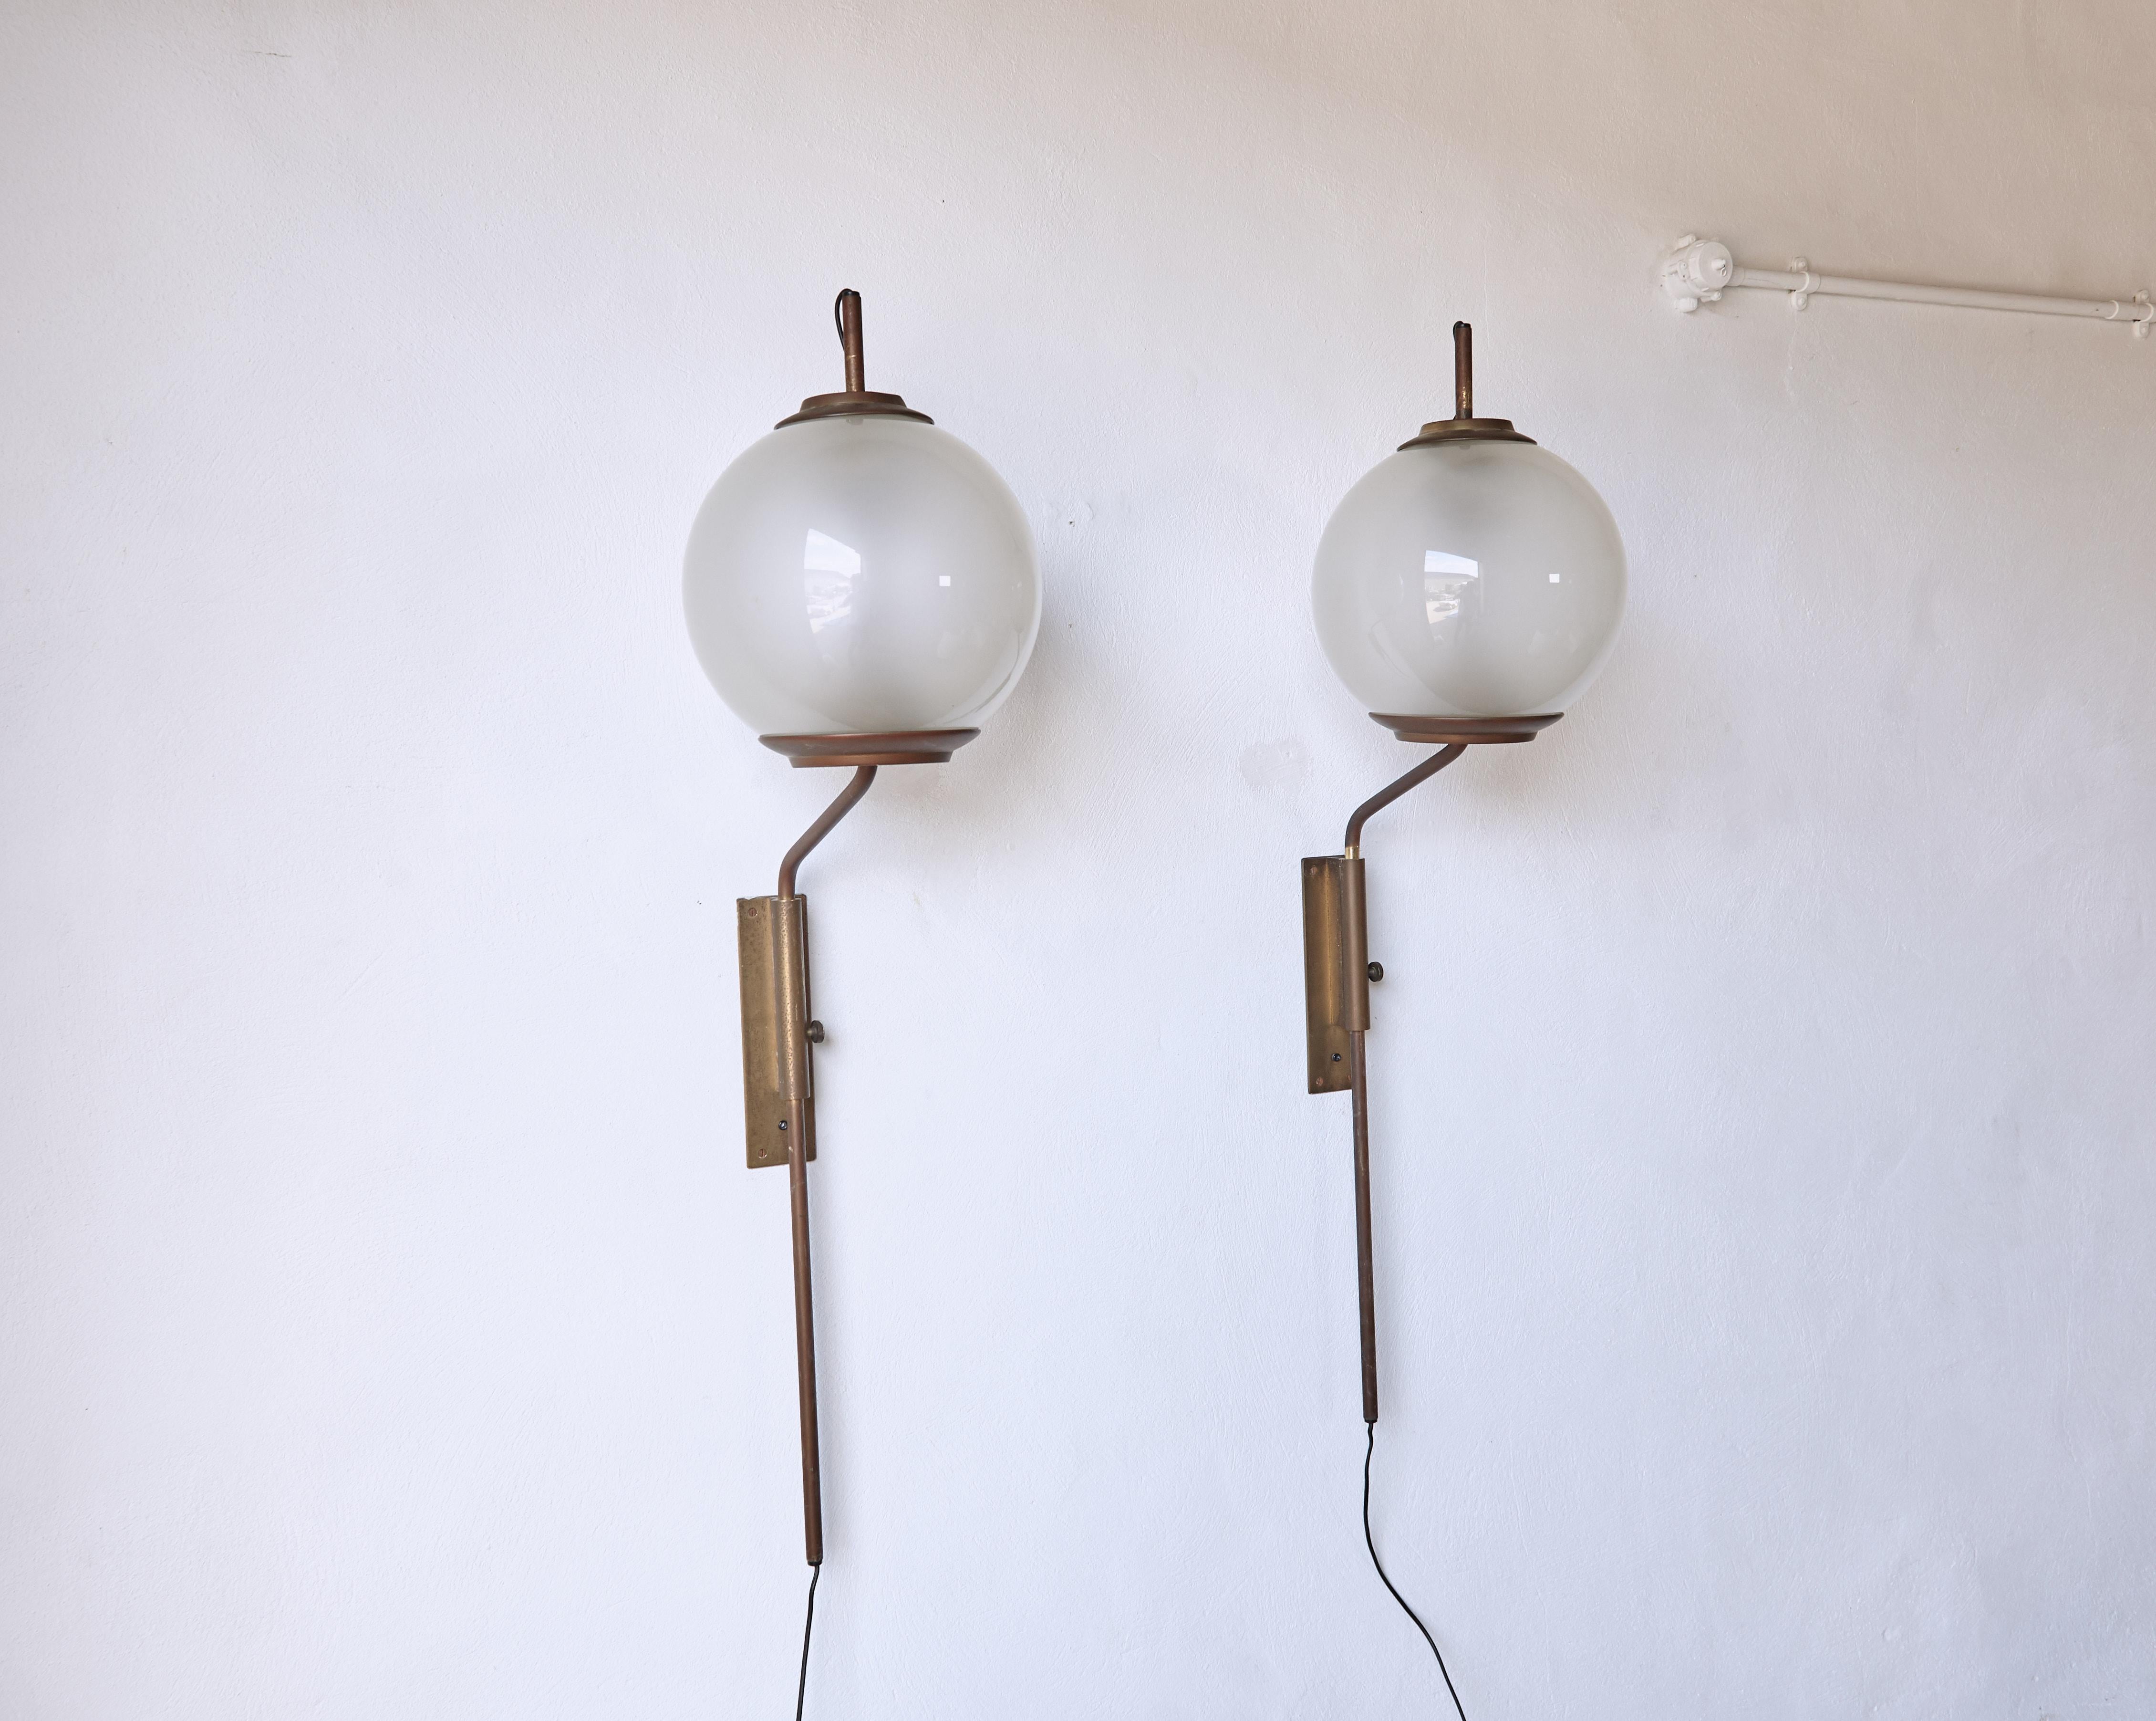 Brass Luigi Caccia Dominioni LP11 / Pallone Wall Lamps, Azucena, Italy, 1950s For Sale